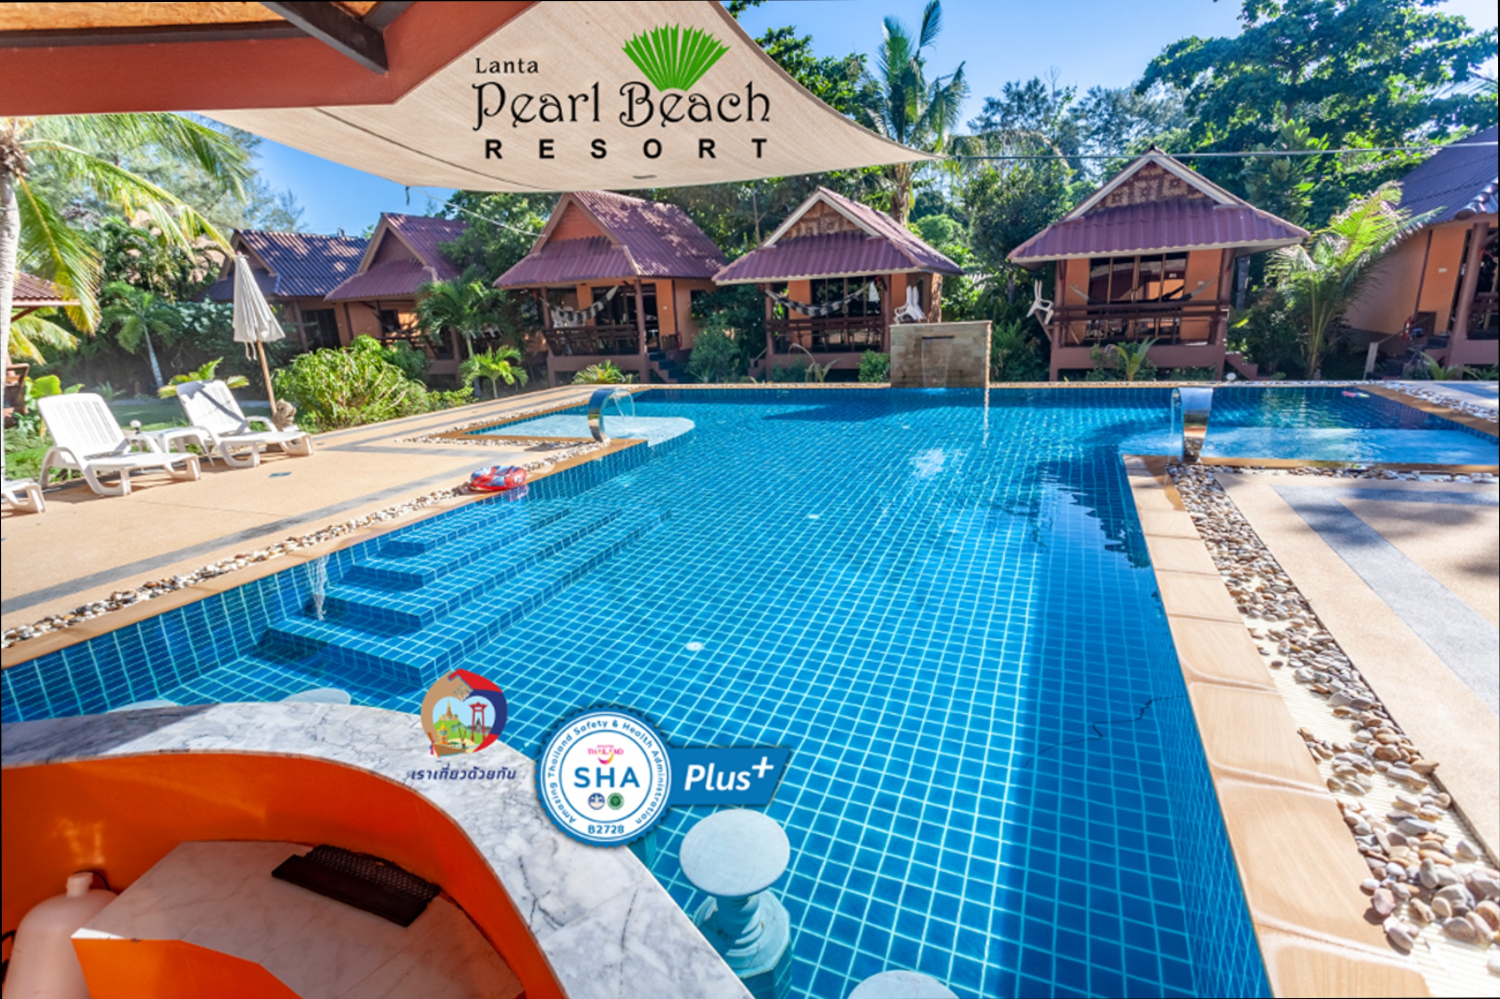 Lanta Pearl Beach Resort - Image 0